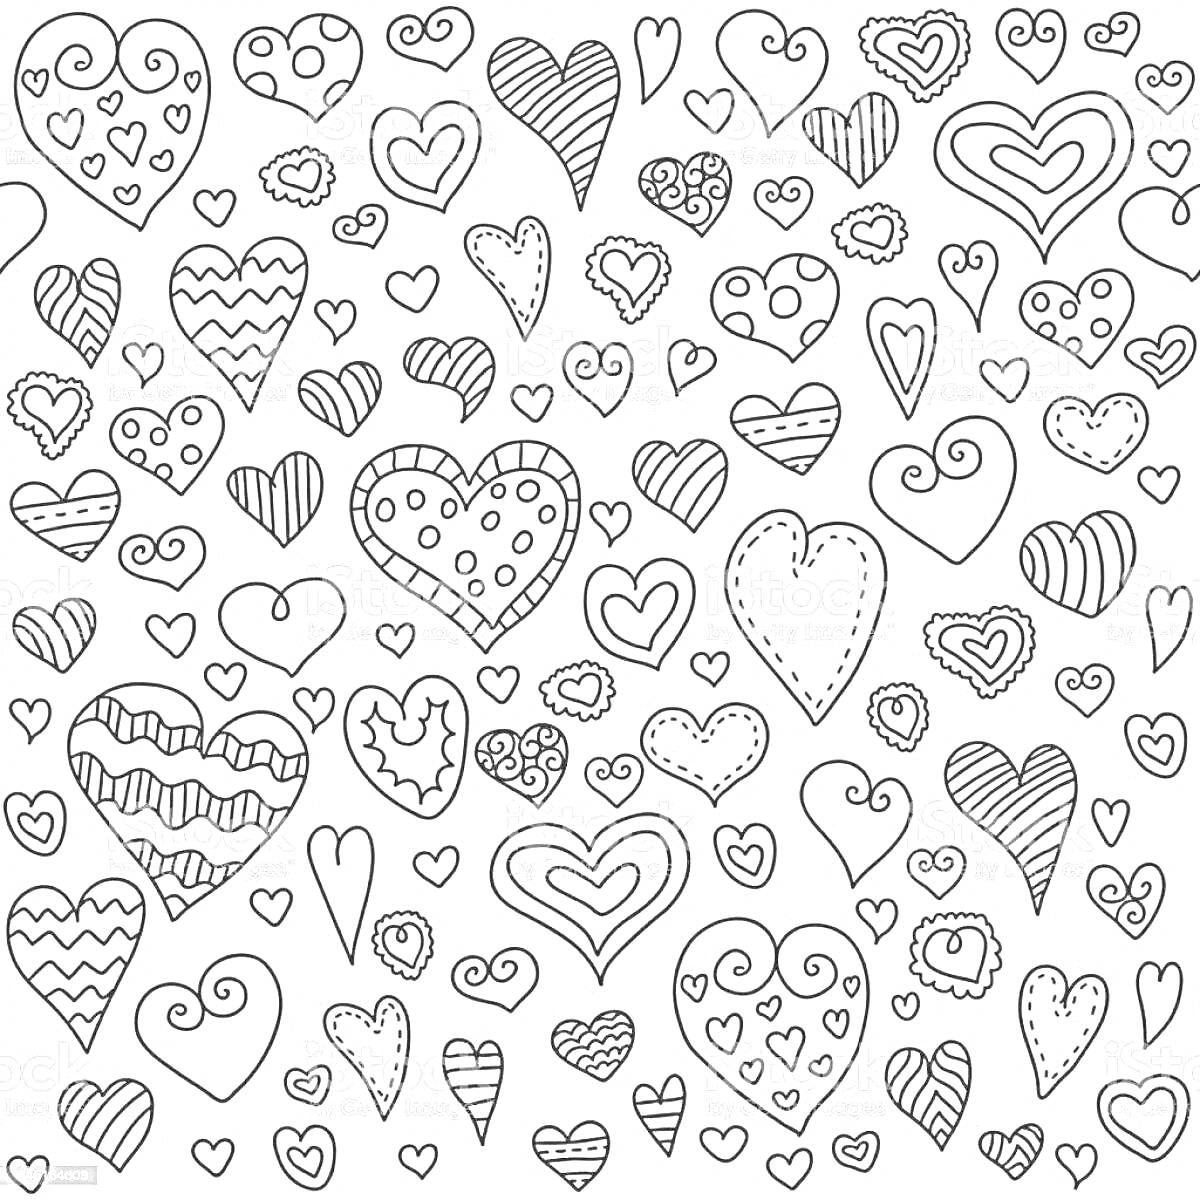 Раскраска Раскраска с разными видами сердечек на белом фоне: большие, маленькие, с узорами, полосками, точками, завитками и обводкой.